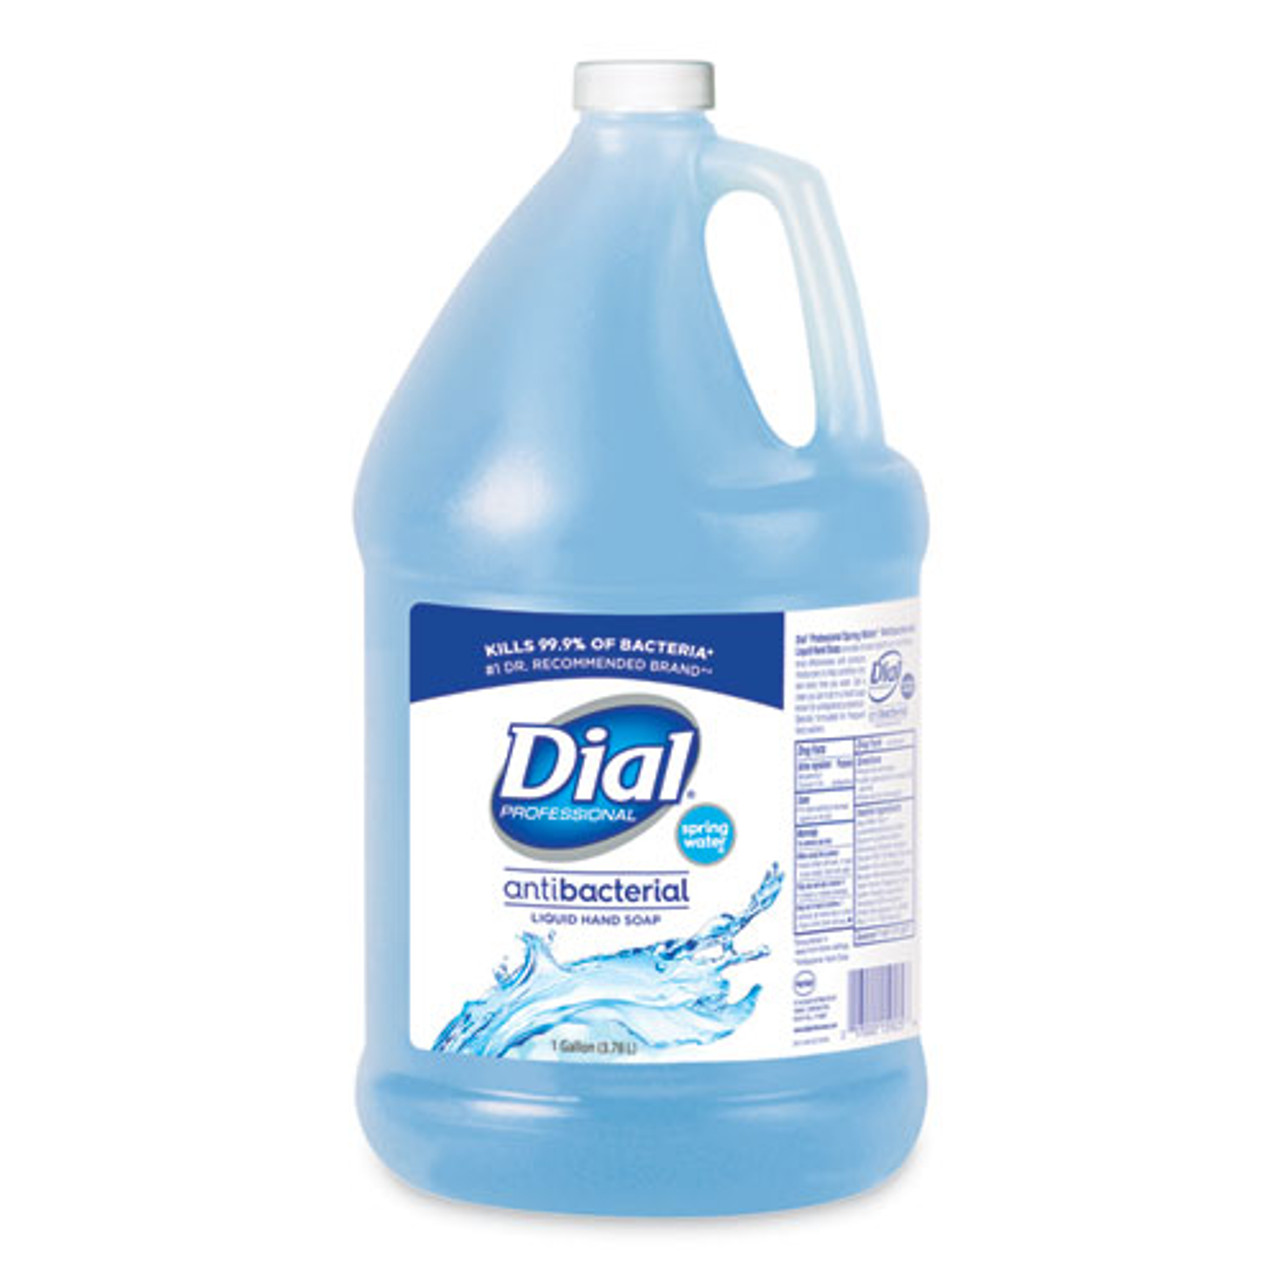 dial liquid soap